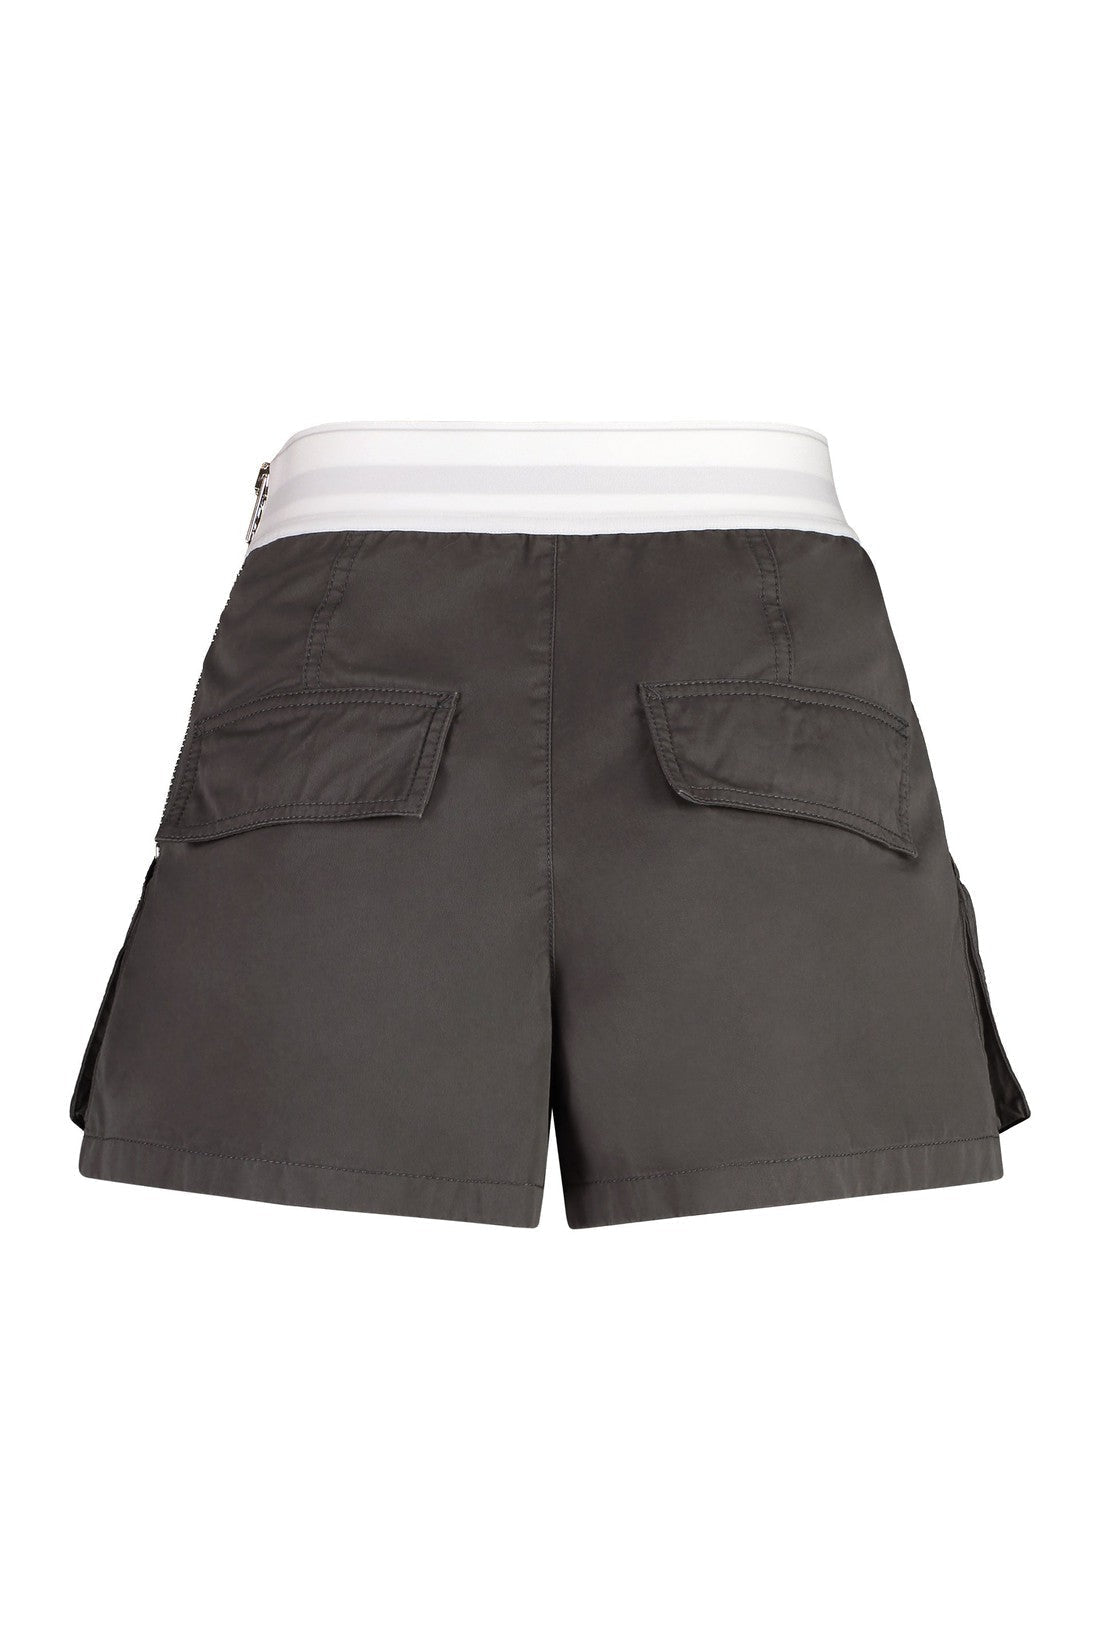 Alexander Wang-OUTLET-SALE-Rave cotton cargo-shorts-ARCHIVIST